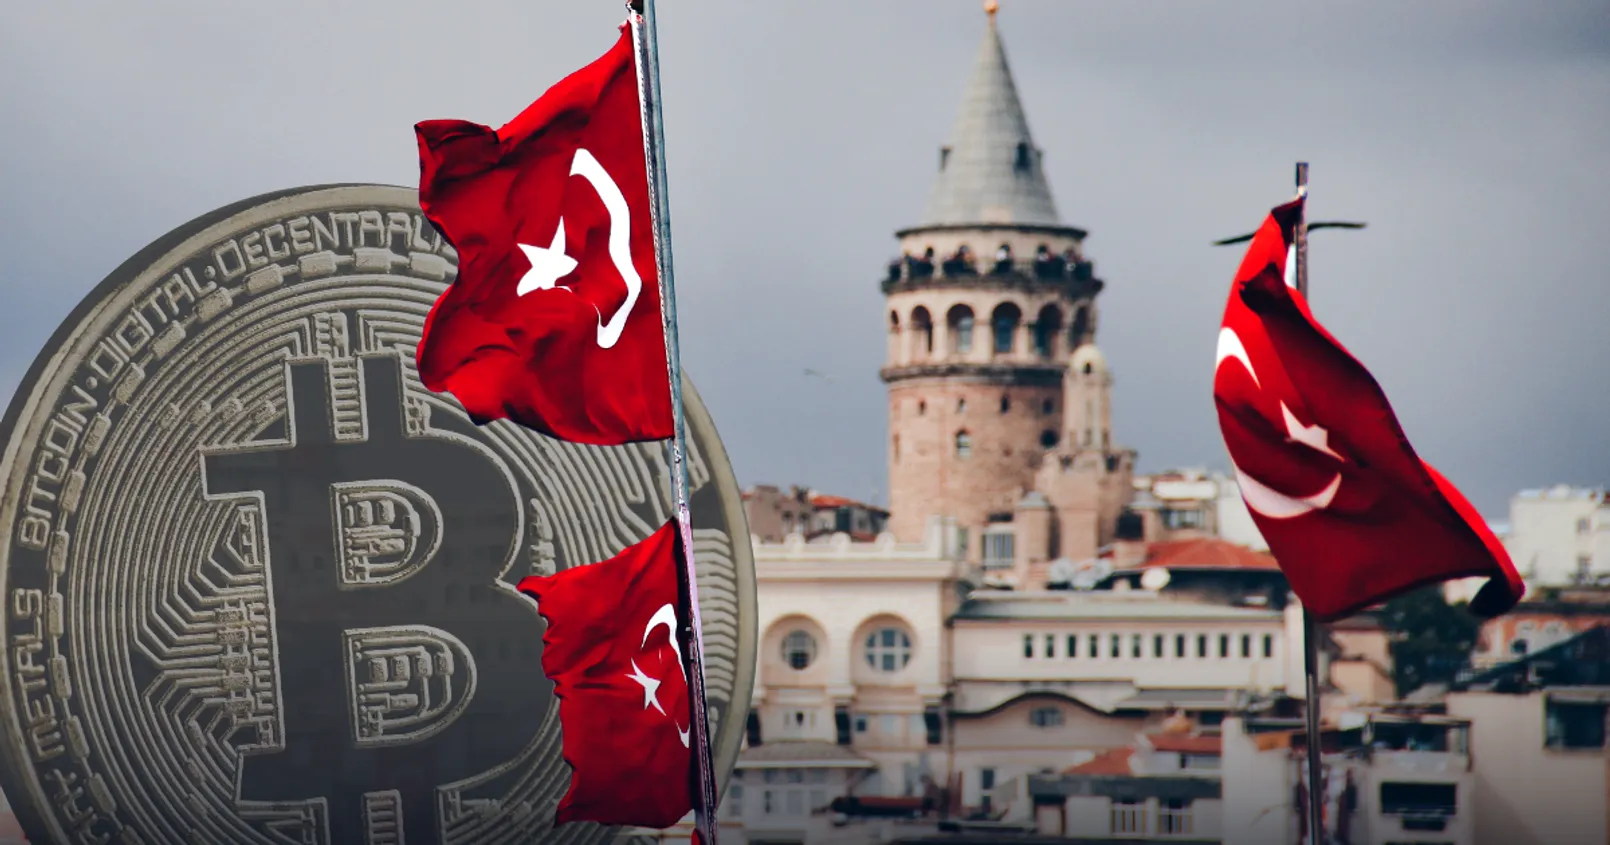 พบชาวตุรกี มากกว่า 50% ลงทุนในคริปโต พร้อมวิกฤตสกุลเงิน 'ไลรา' ดันปชช.ซื้อ BTC มากขึ้น